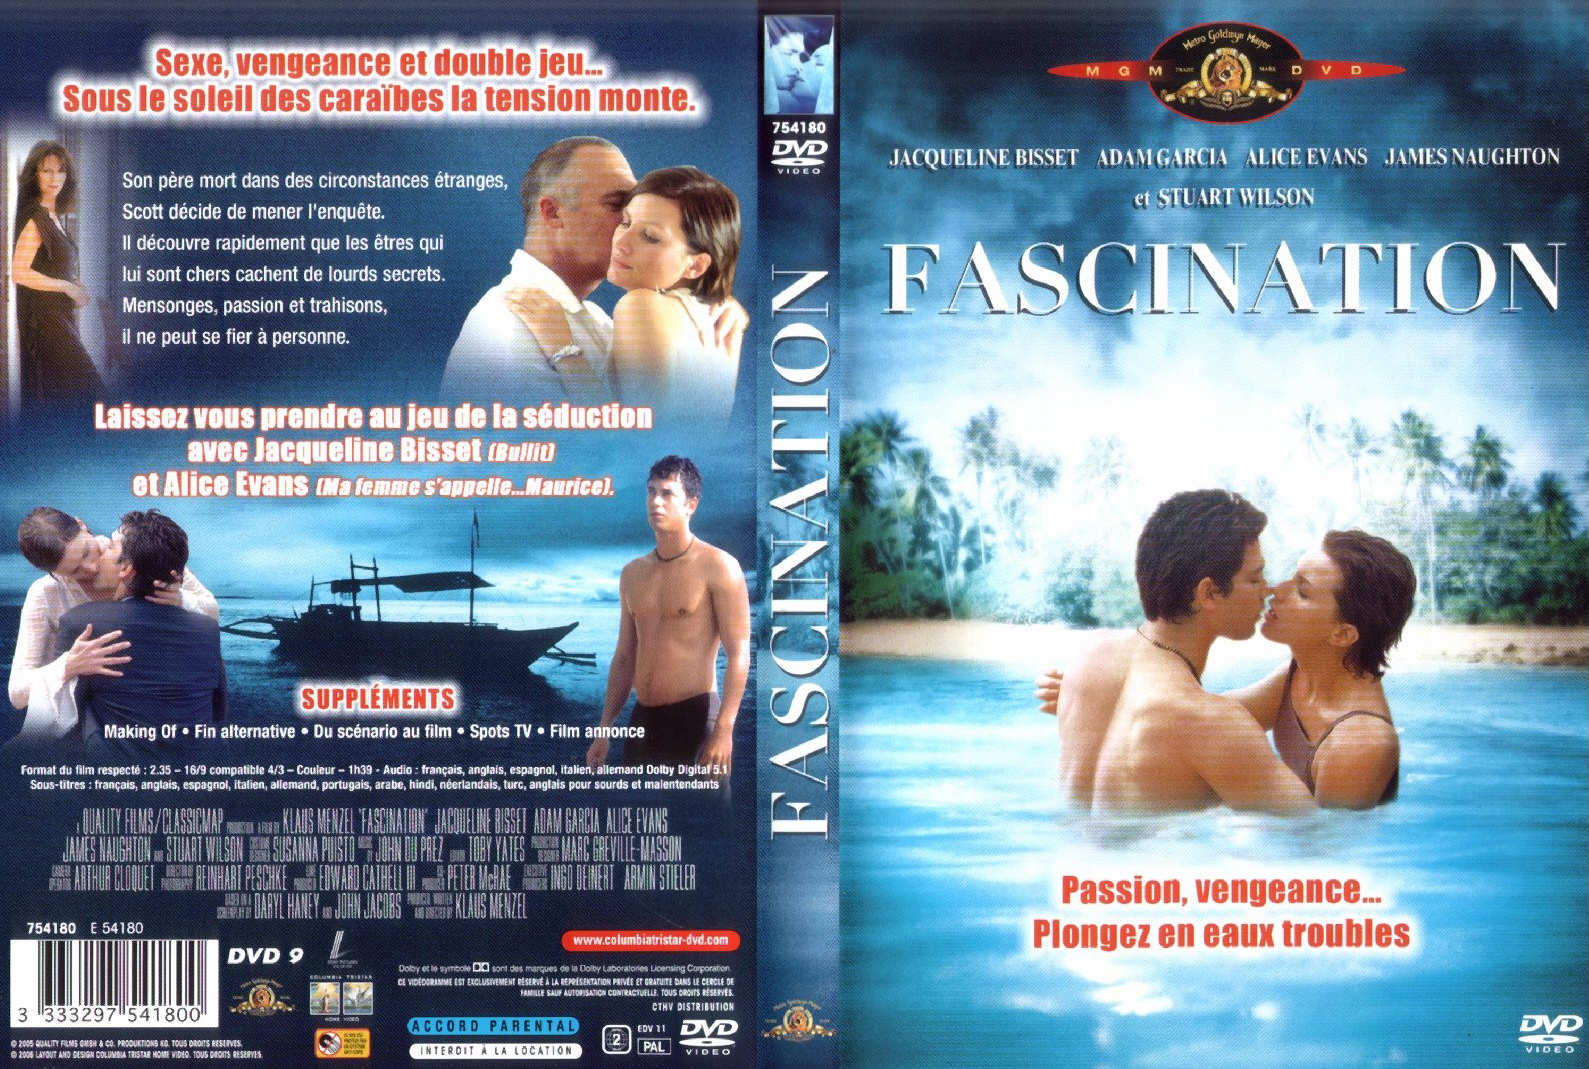 Jaquette DVD Fascination v2